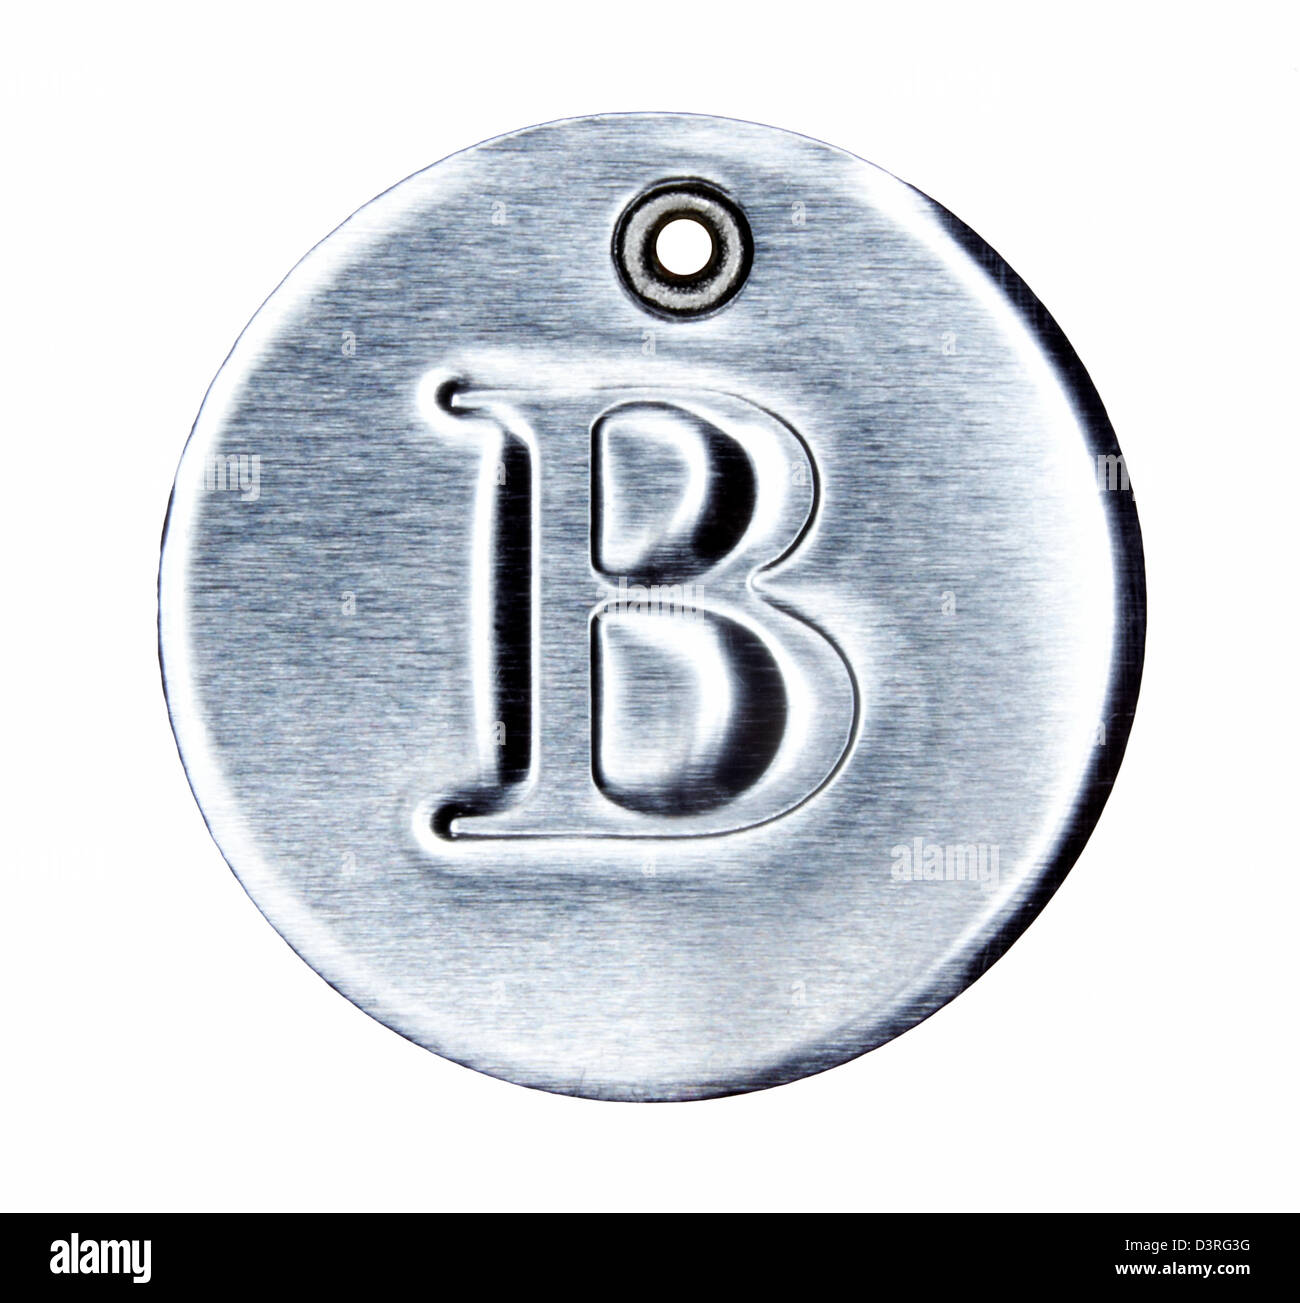 En métal brossé, lettre de l'alphabet B Banque D'Images